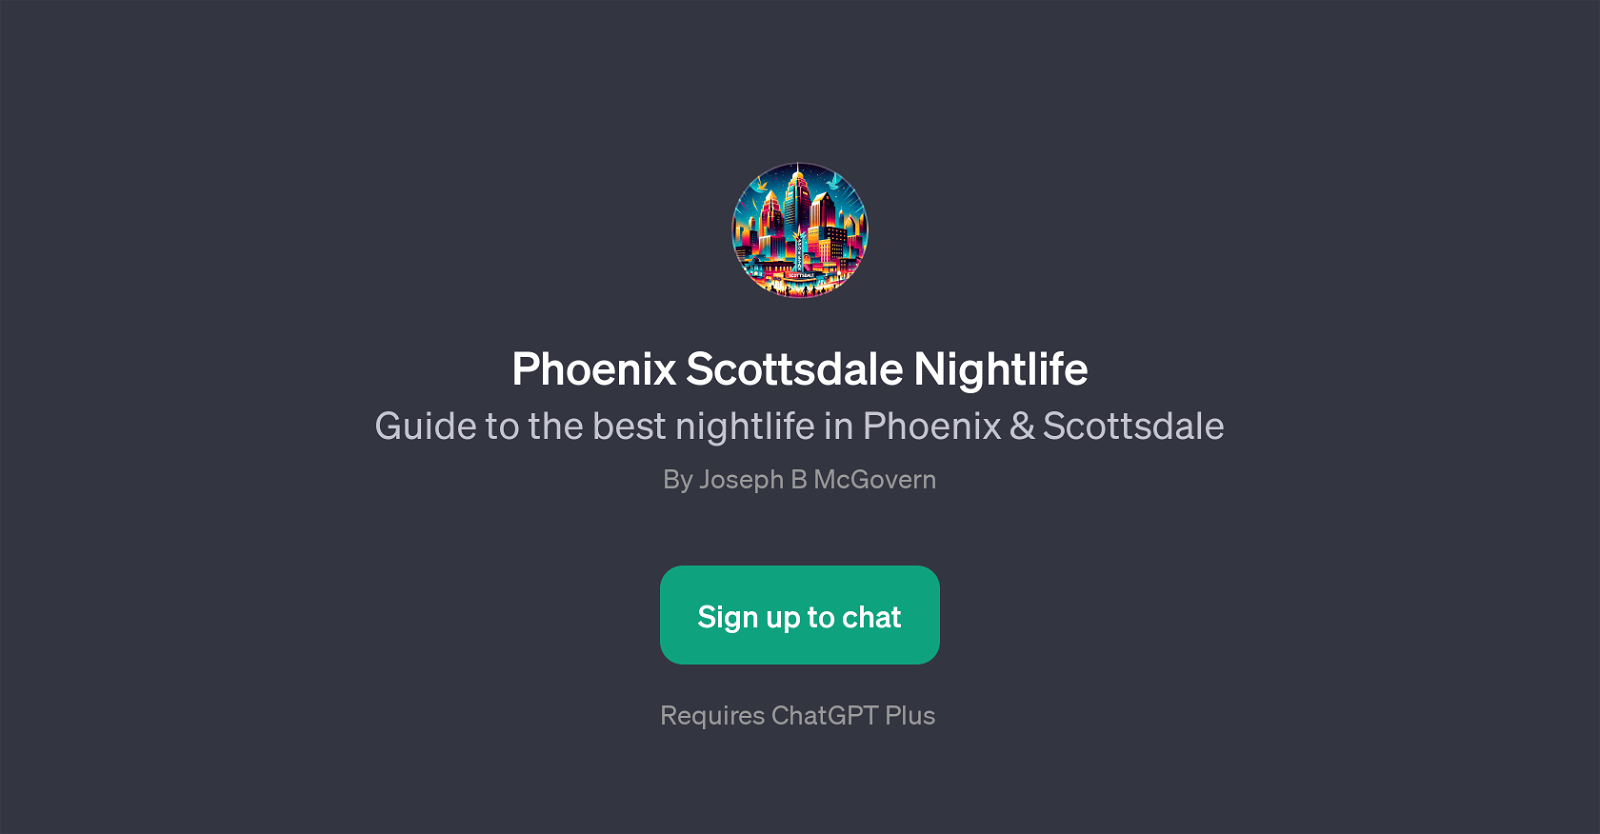 Phoenix Scottsdale Nightlife website